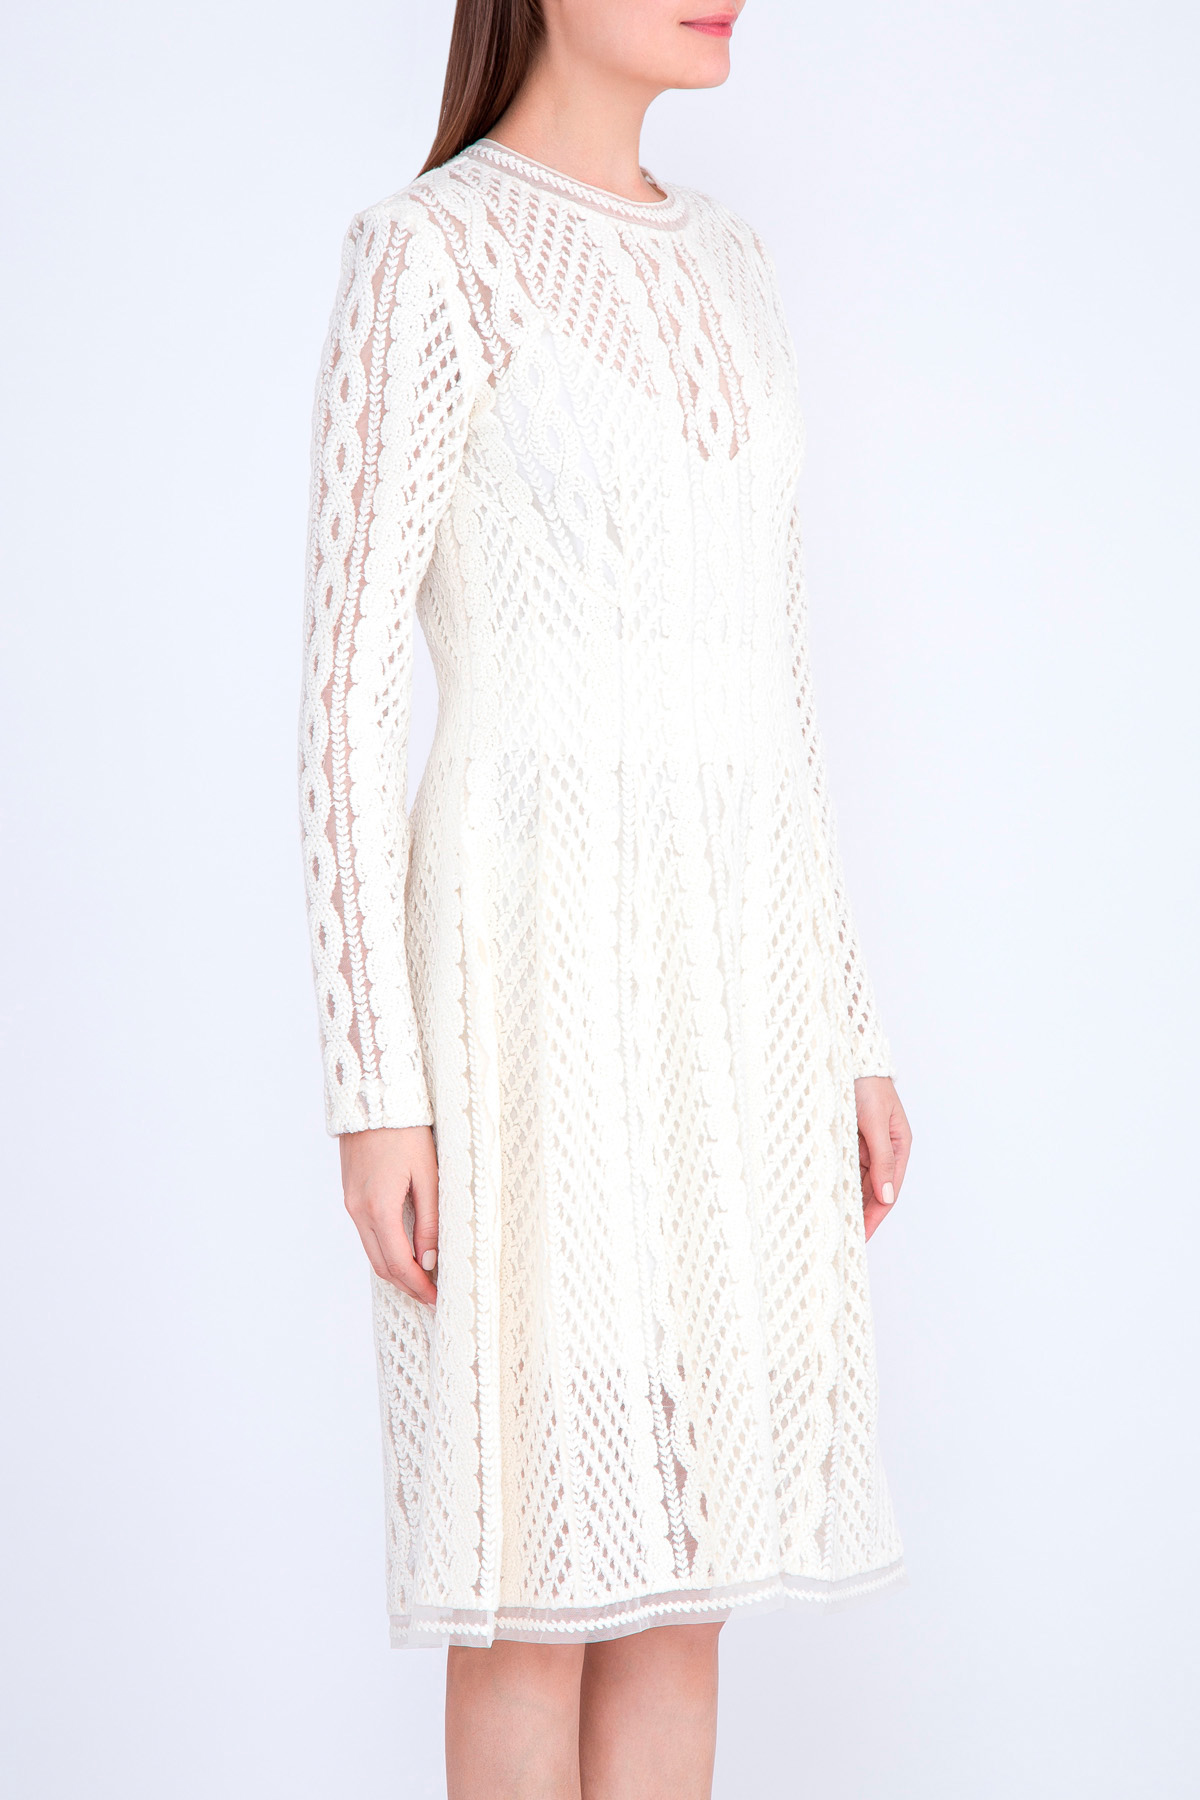 Двухслойное платье из вуали с ажурной вышивкой шерстяной нитью ERMANNO SCERVINO, цвет белый, размер 42 - фото 3